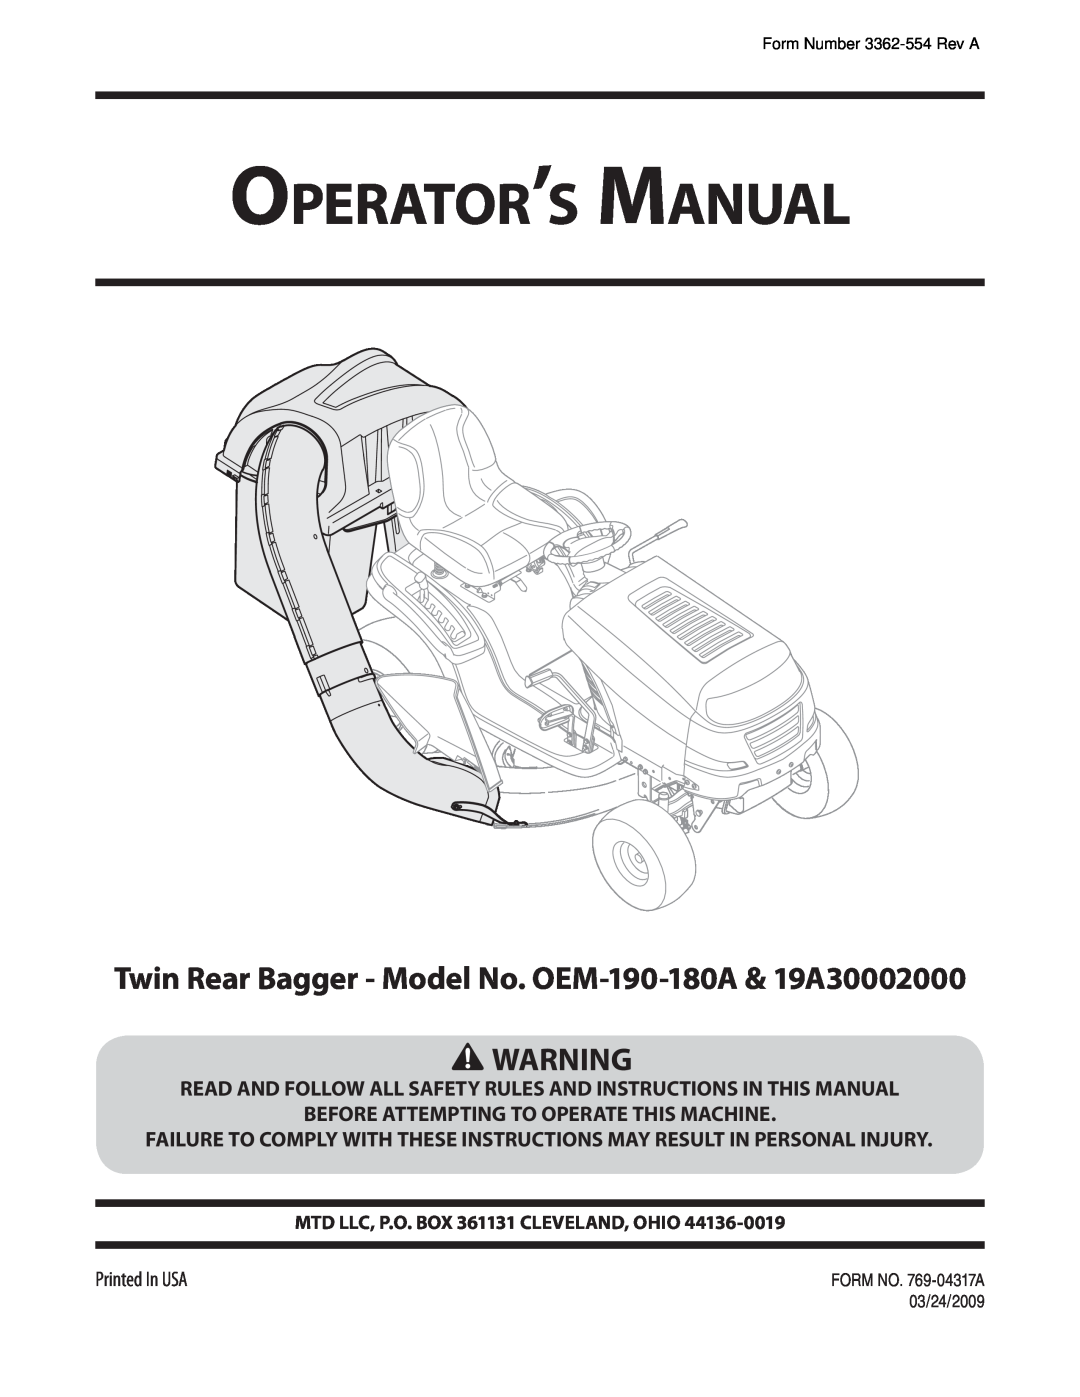 MTD manual Operator’s Manual, Twin Rear Bagger - Model No. OEM-190-180A & 19A30002000 